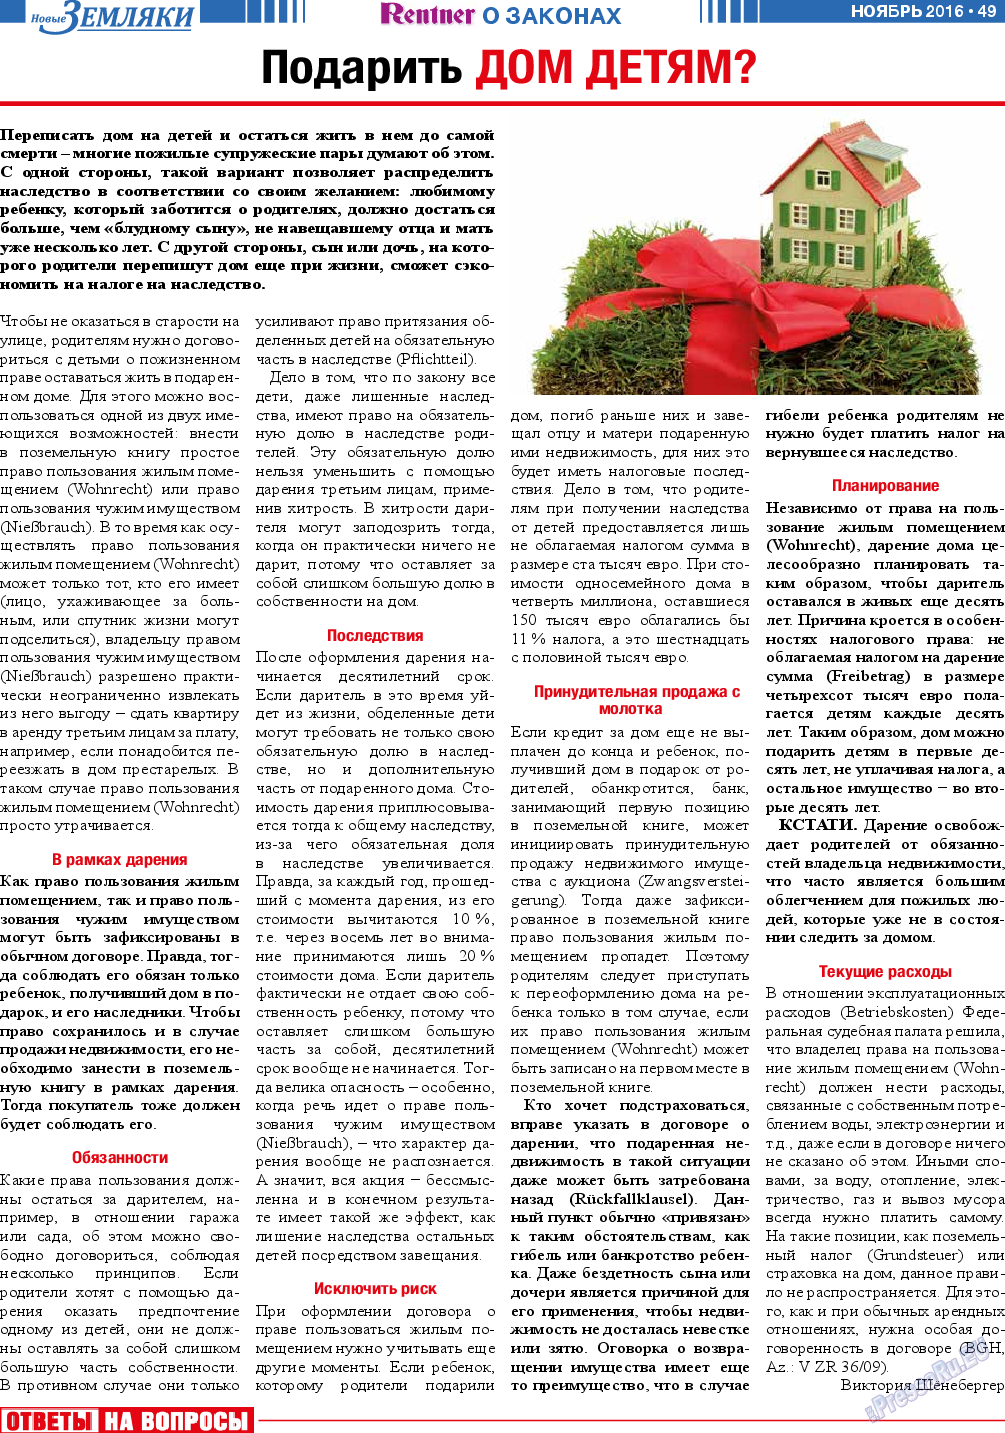 Новые Земляки, газета. 2016 №11 стр.49